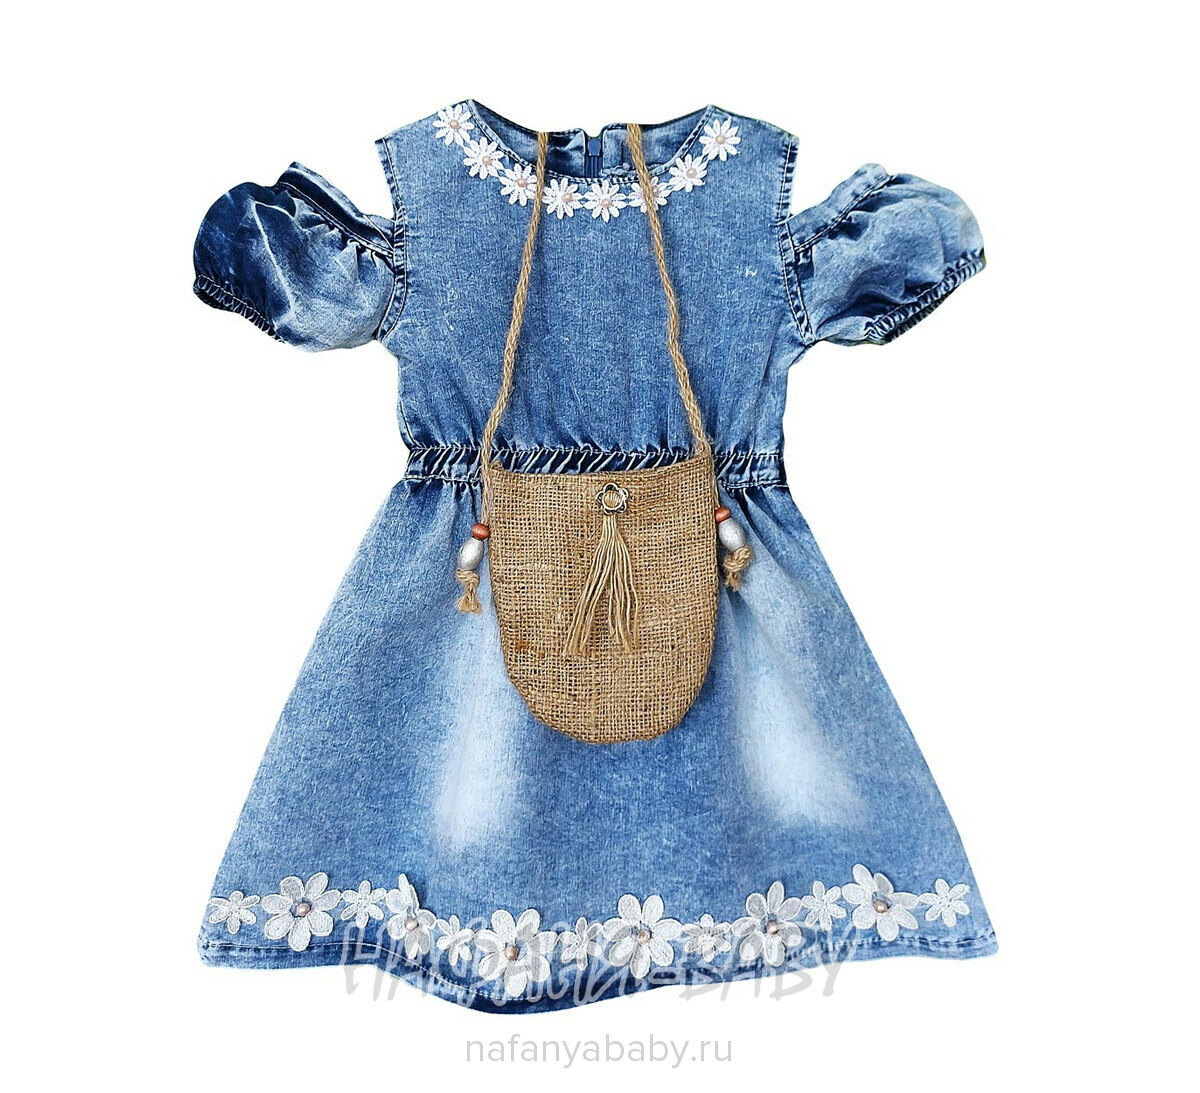 Детское платье + сумочка LOMIX арт: 3055, 5-9 лет, 1-4 года, цвет синий, оптом Турция